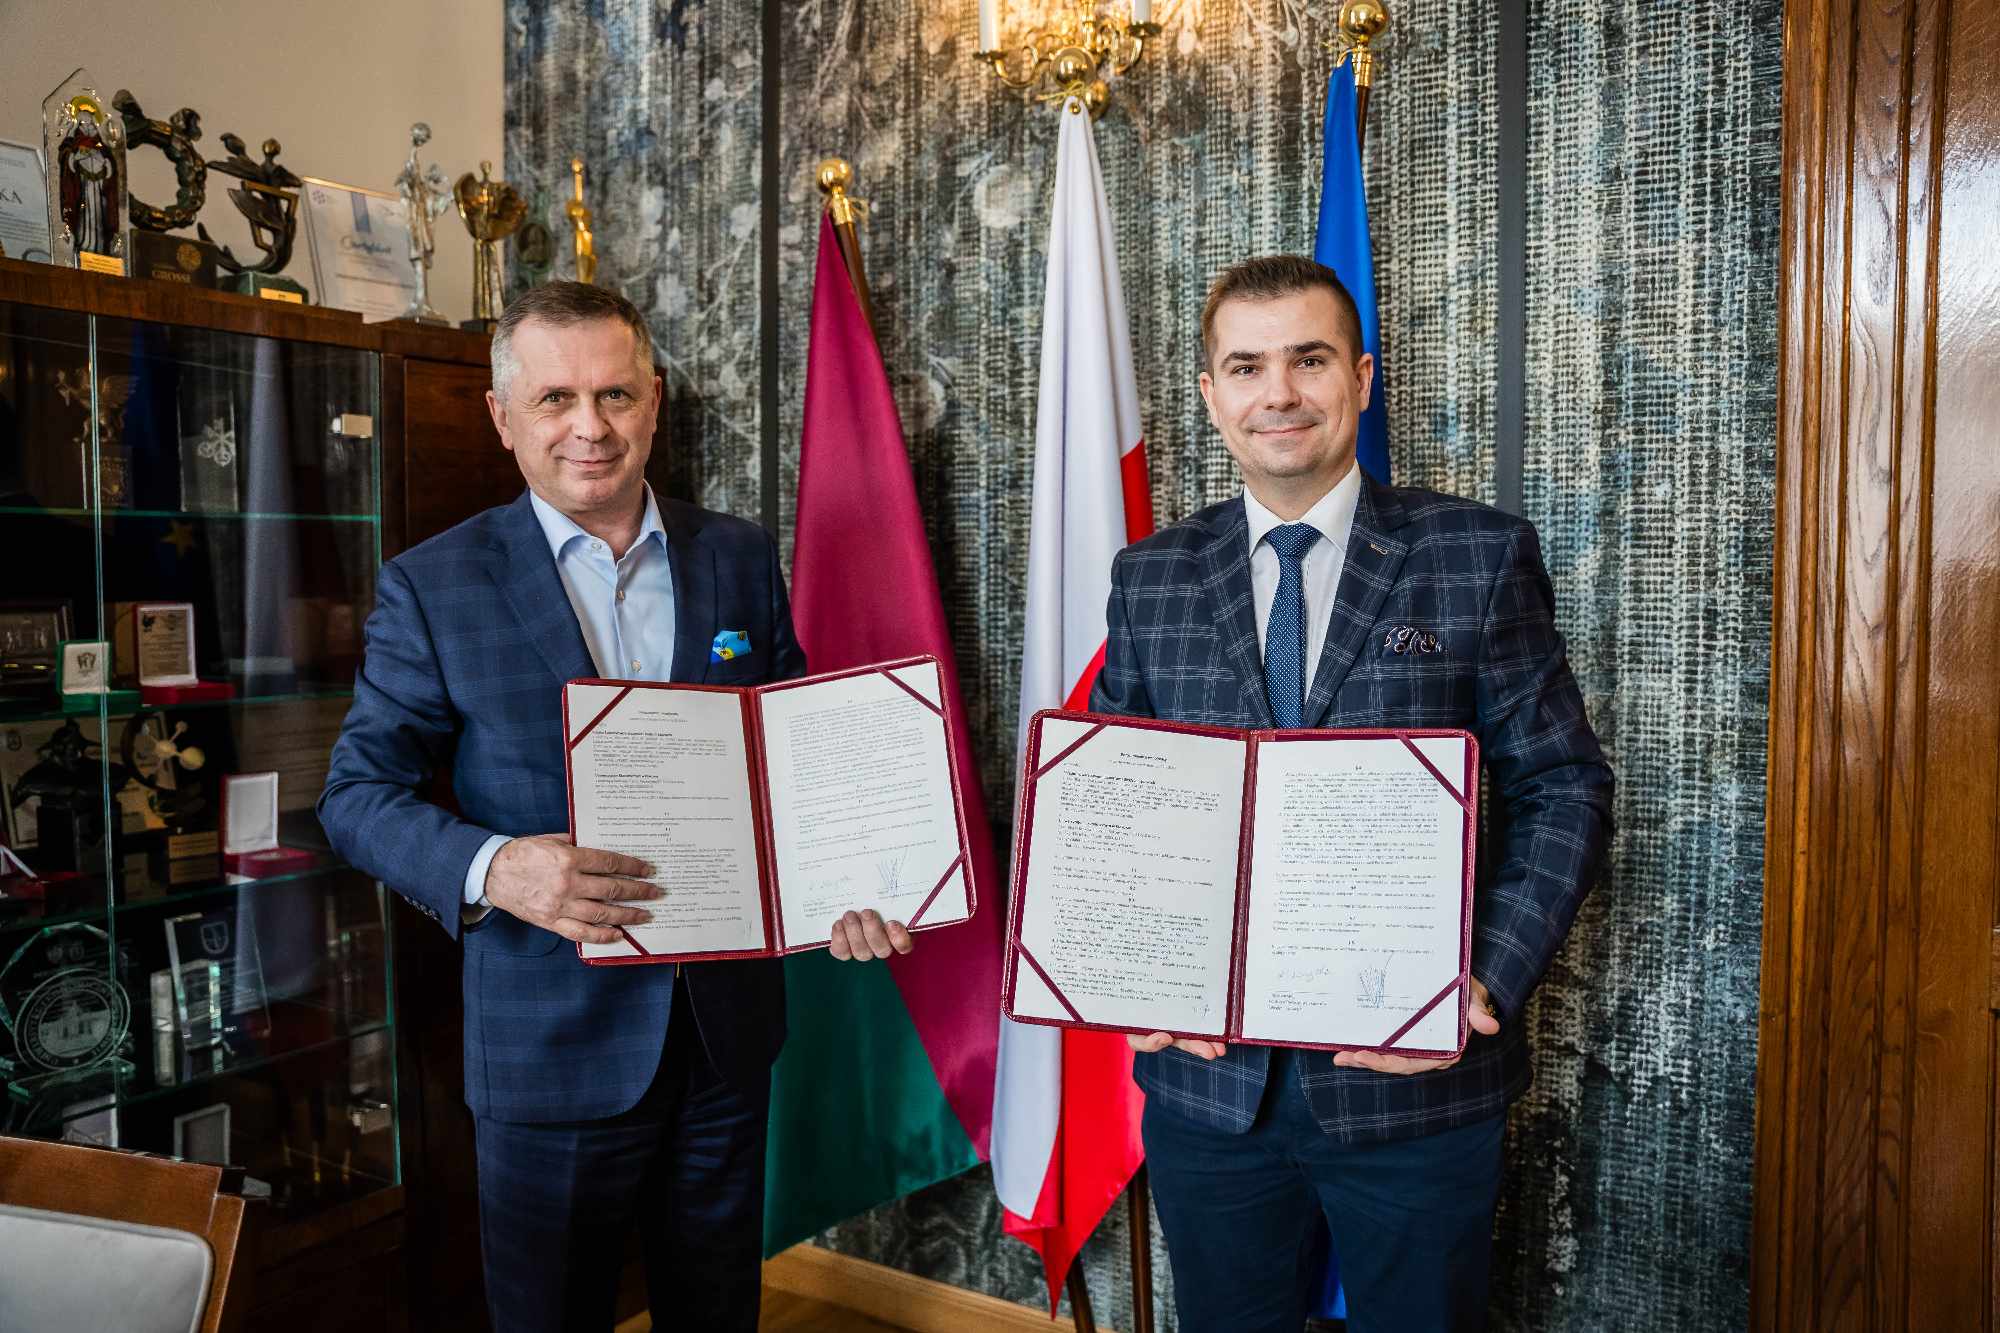 Porozumienie pomiędzy Uniwersytetem Ekonomicznym w Krakowie a Polskim Towarzystwem Ekspertów i Biegłych Sądowych